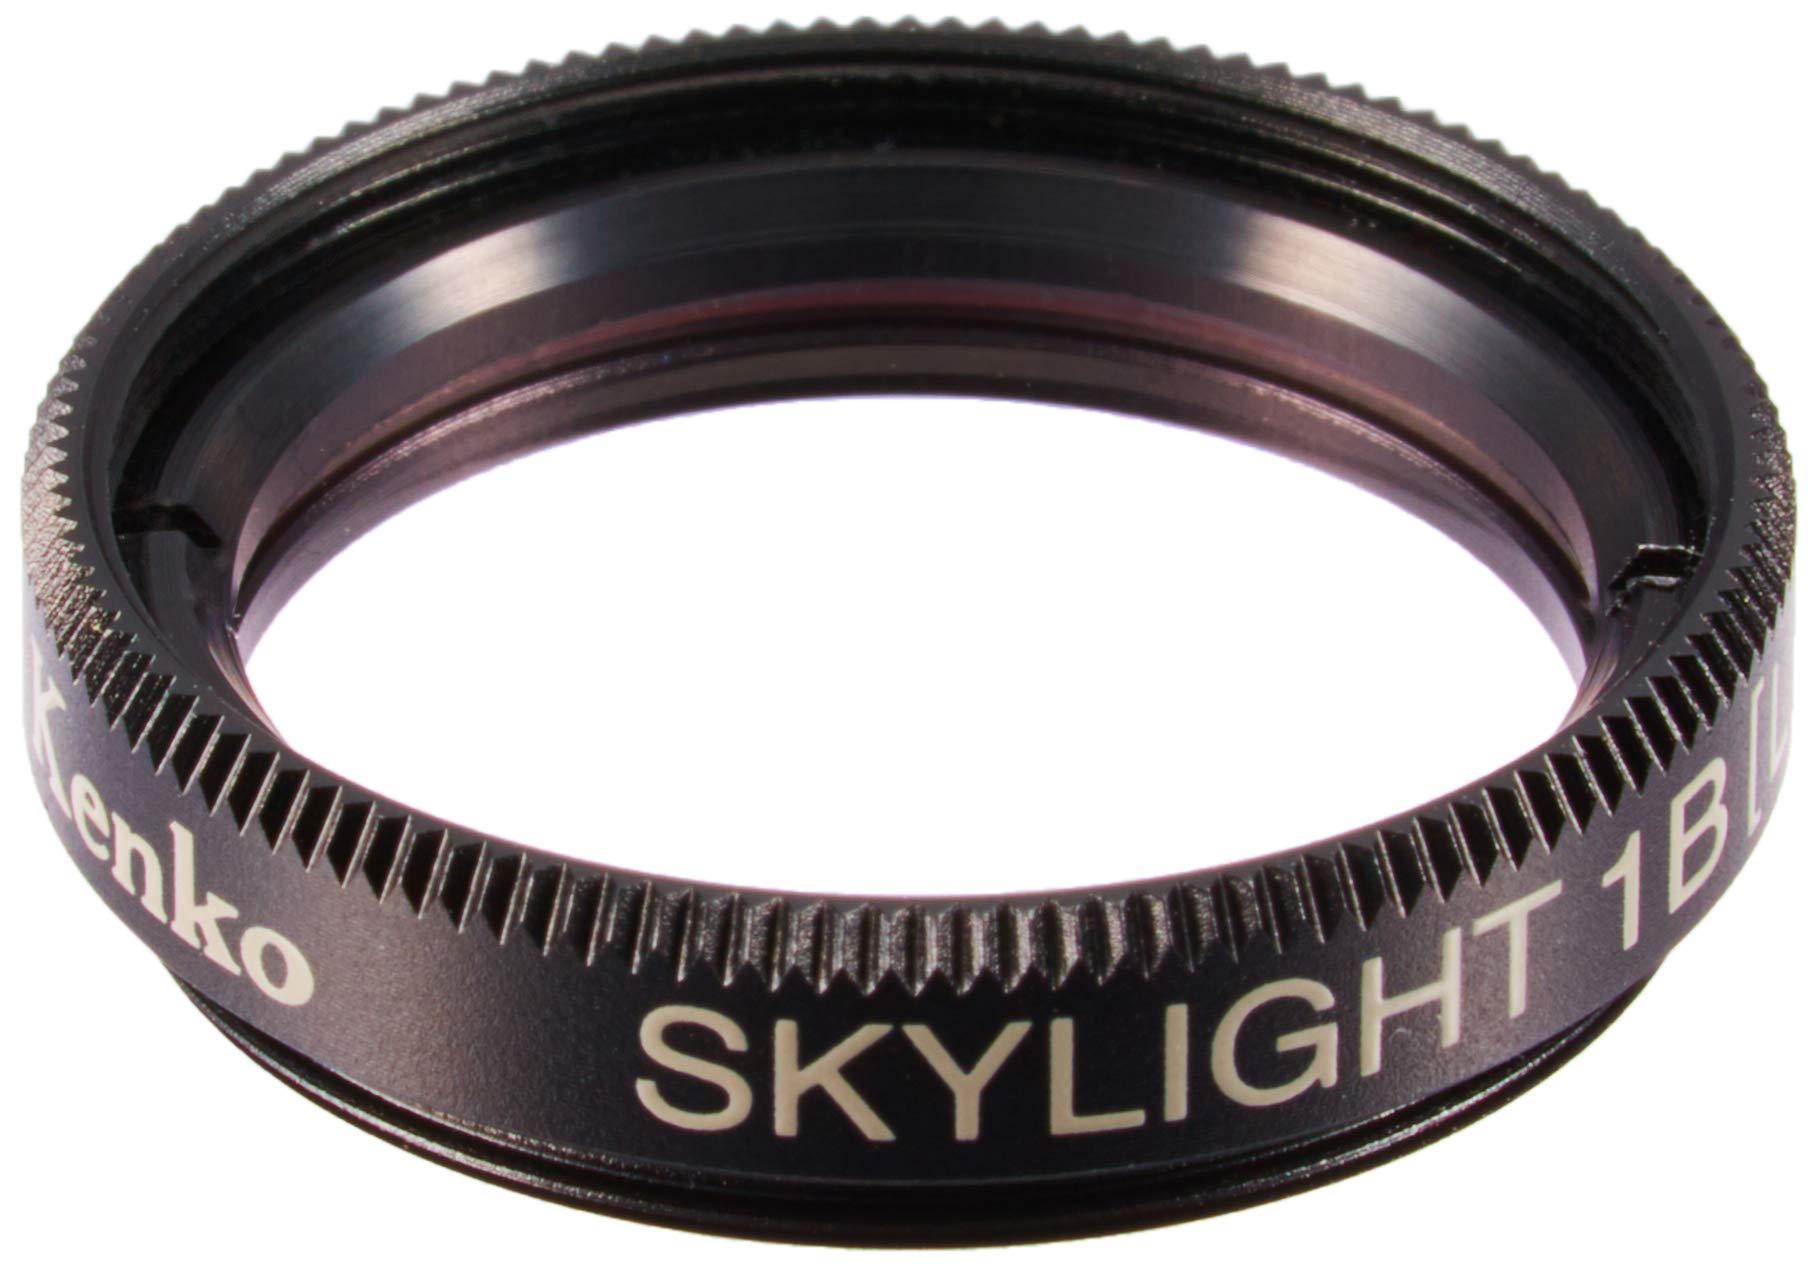 Kenko カメラ用フィルター モノコート 1Bスカイライト ライカ用フィルター 22mm (L) 黒枠 紫外線吸収用 010396